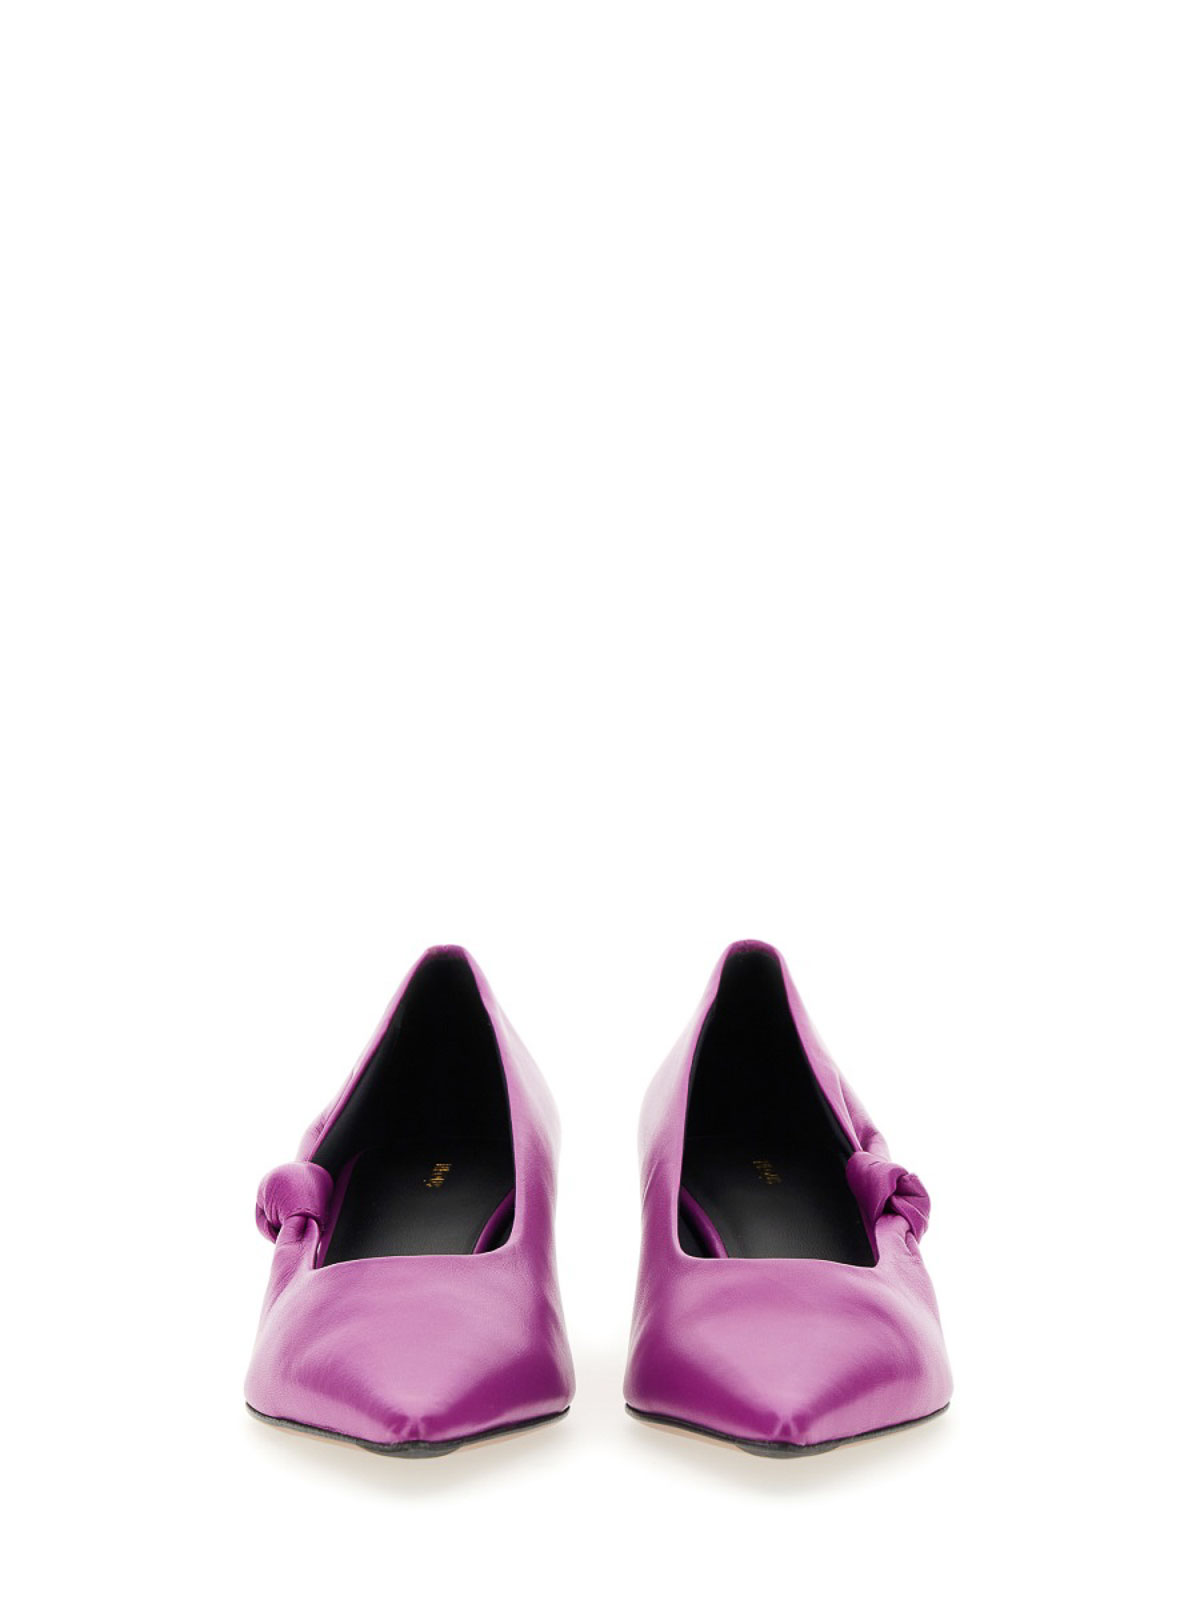 Shop Neous Zapatos De Salón - Gunite In Purple